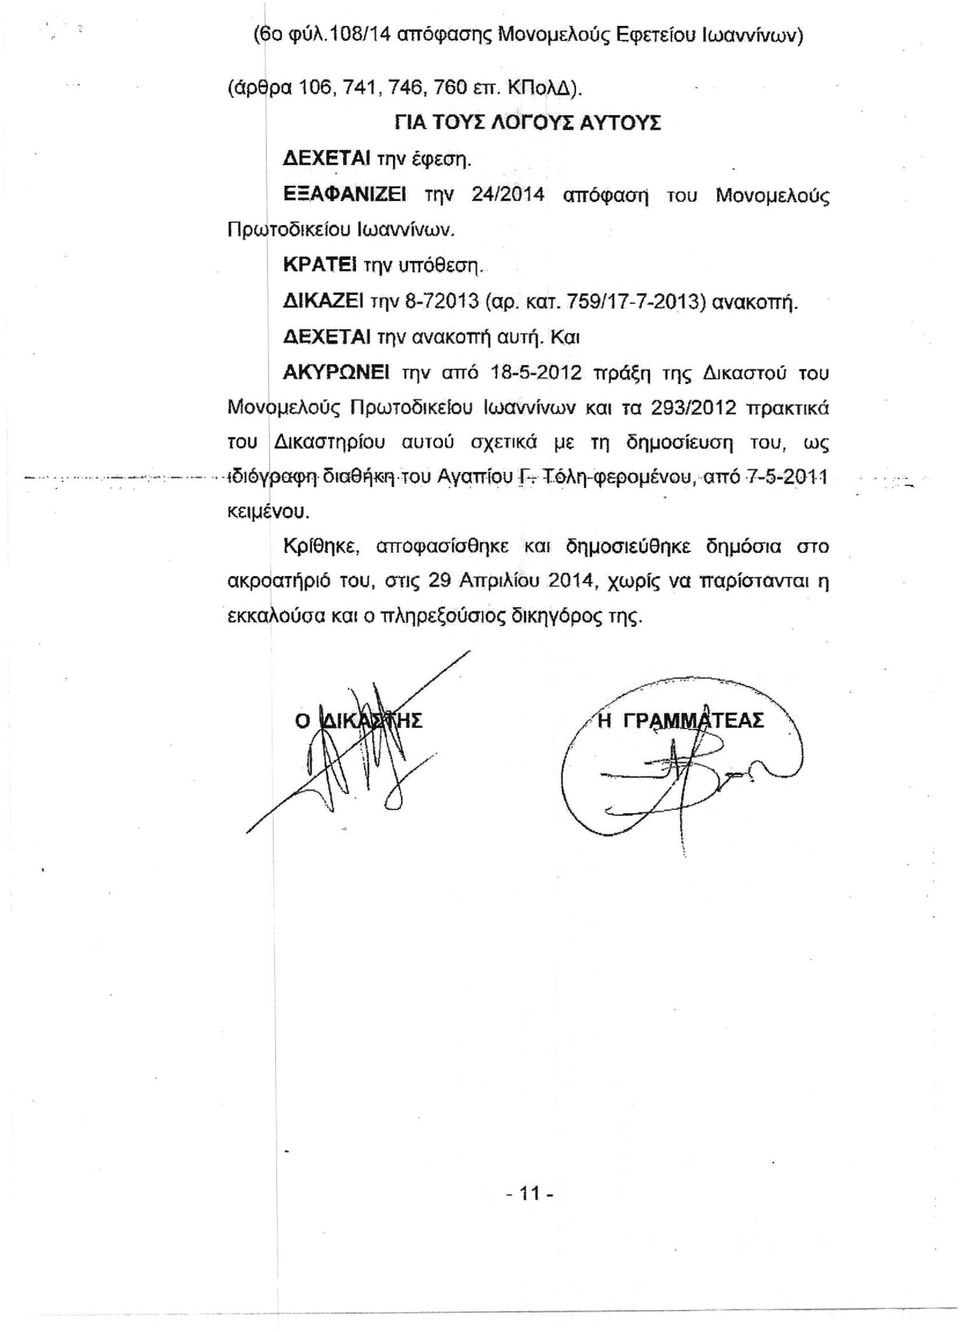 Και ΑΚΥΡΩΝΕΙ την από 18-5-2012 πράξη της Δικαστού του Μονομελούς Πρωτοδικείου Ιωαννίνων και τα 293/2012 πρακτικά του Δικαστηρίου αυτού σχετικά με τη δημοσίευση του, ως